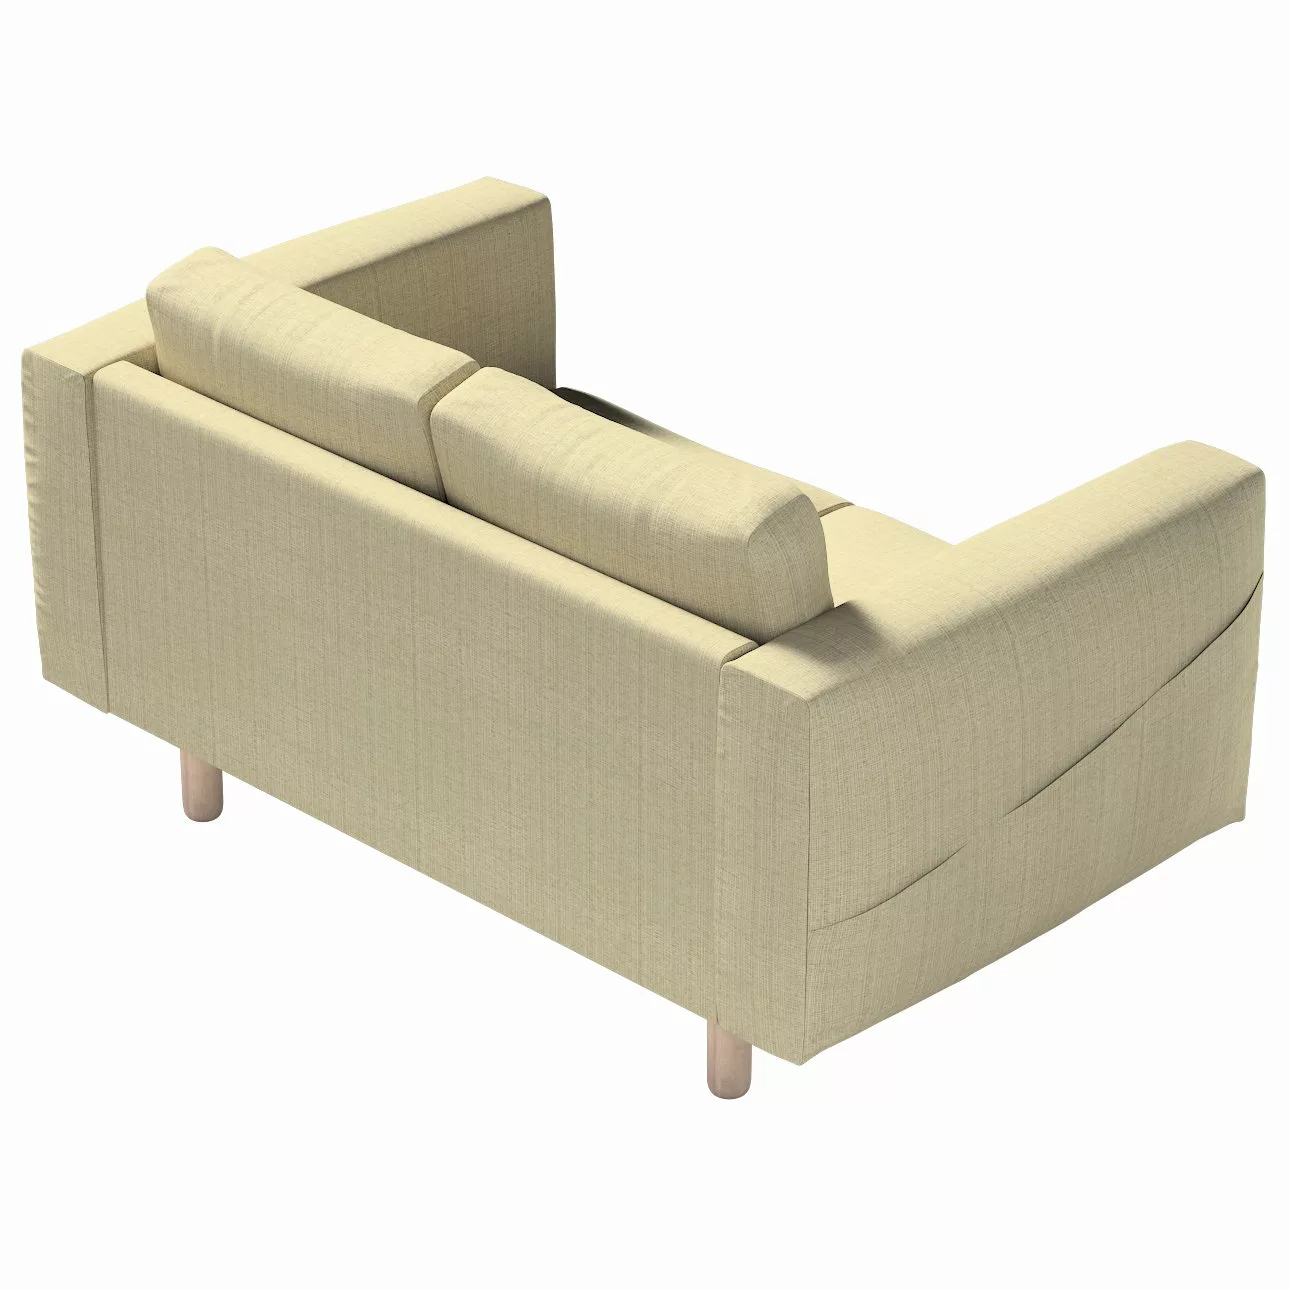 Bezug für Norsborg 2-Sitzer Sofa, beige-creme, Norsborg 2-Sitzer Sofabezug, günstig online kaufen